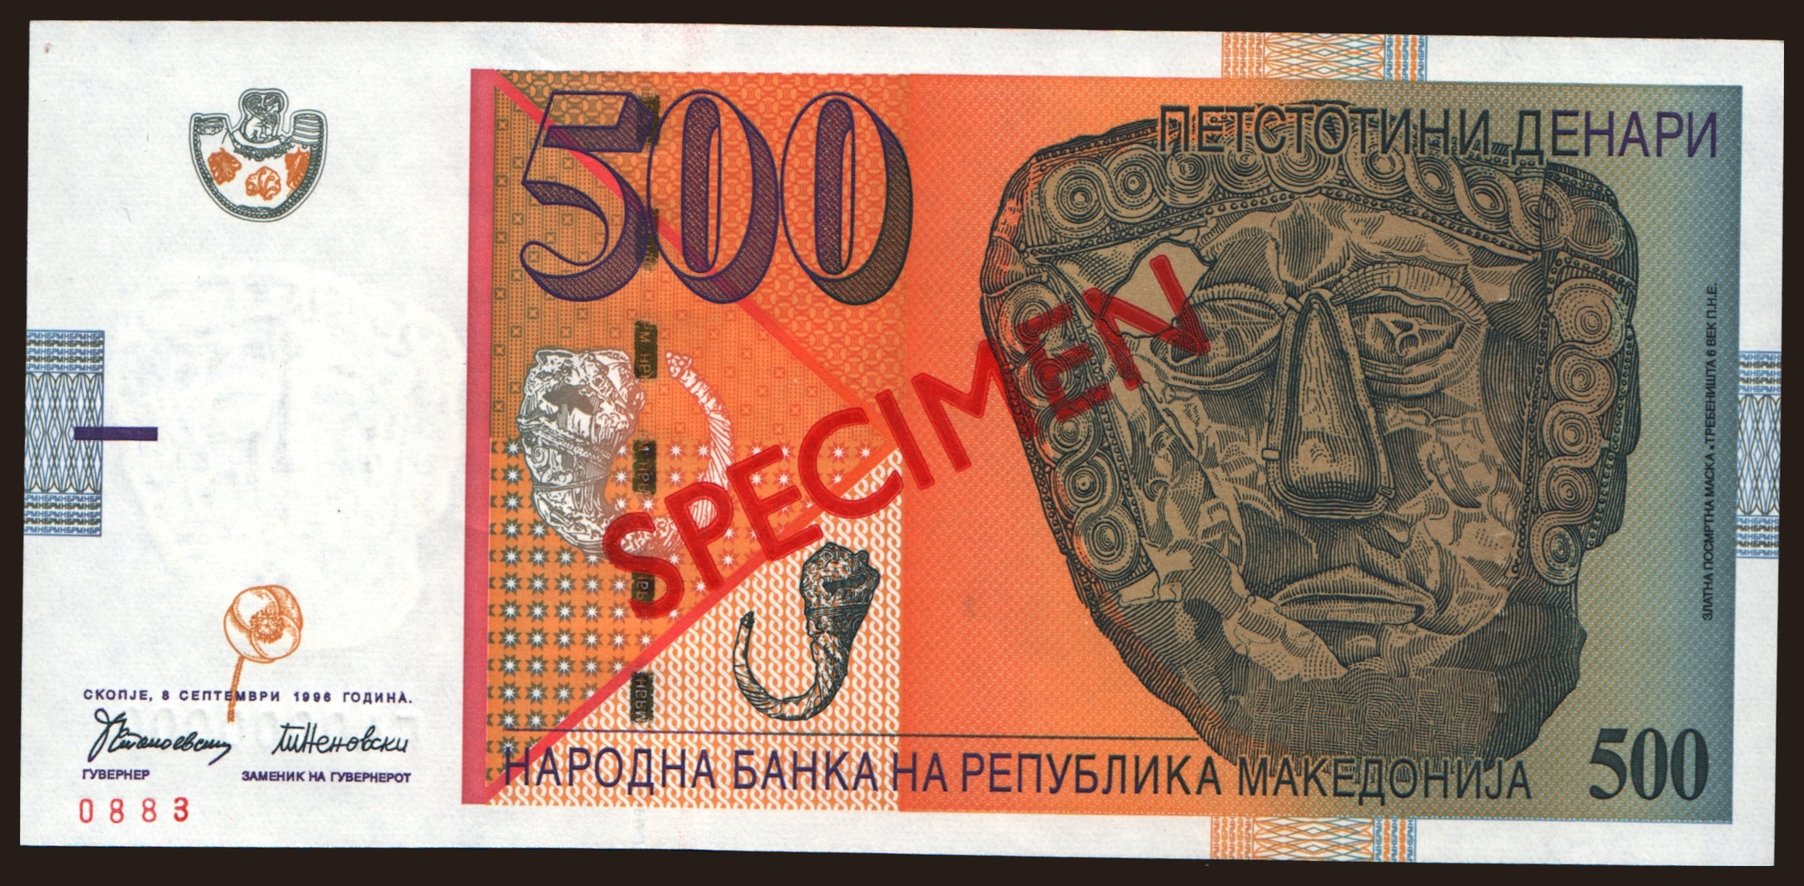 500 denari, 1996, SPECIMEN